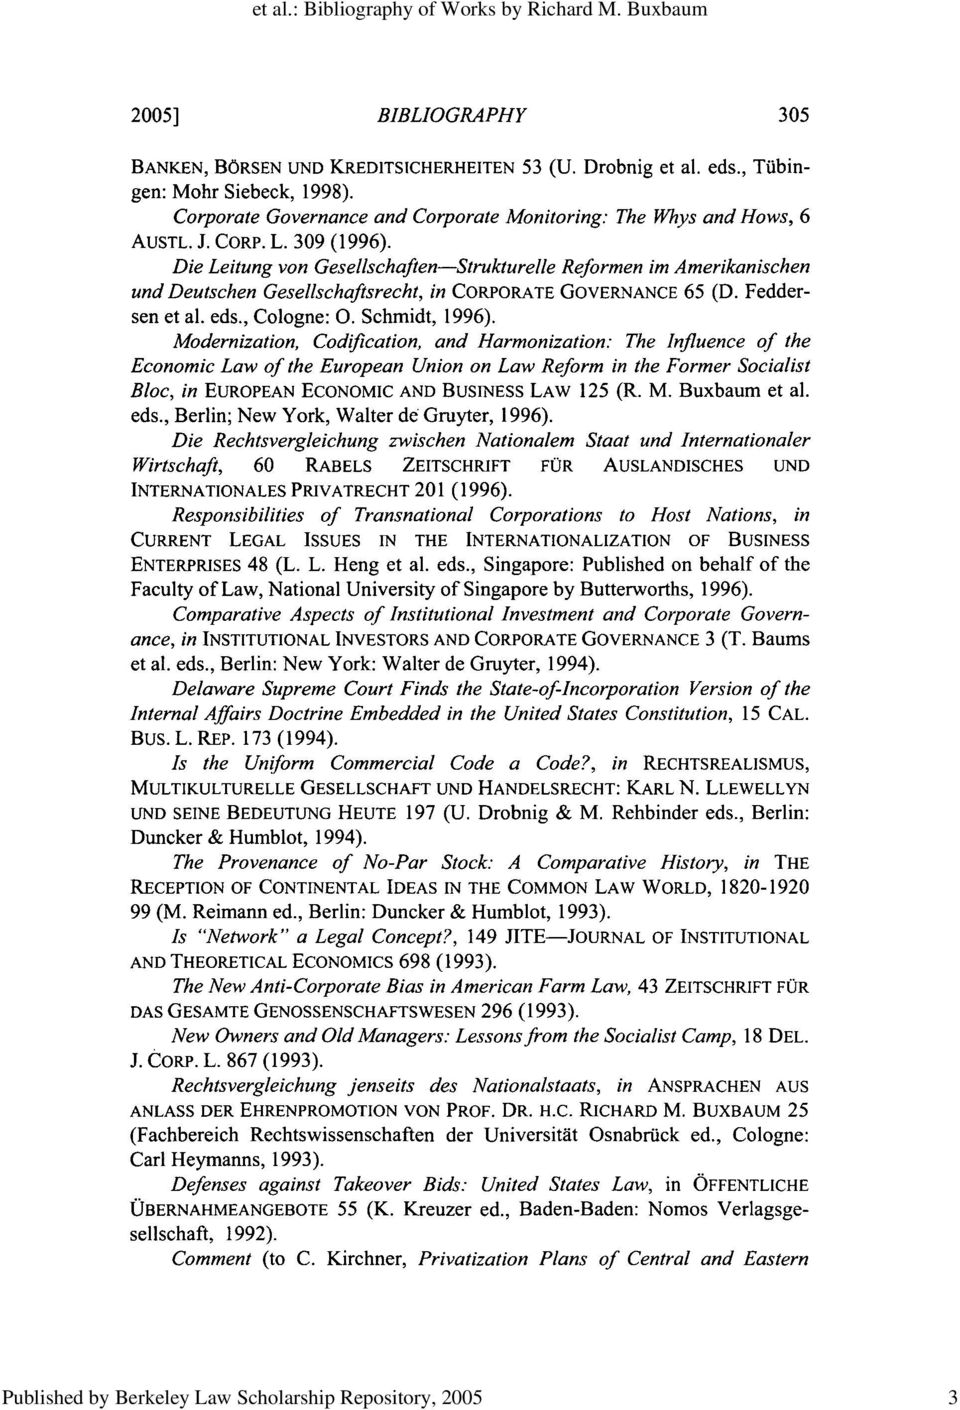 Die Leitung von Gesellschaften-Strukturelle Reformen im Amerikanischen und Deutschen Gesellschafisrecht, in CORPORATE GOVERNANCE 65 (D. Feddersen et al. eds., Cologne: 0. Schmidt, 1996).